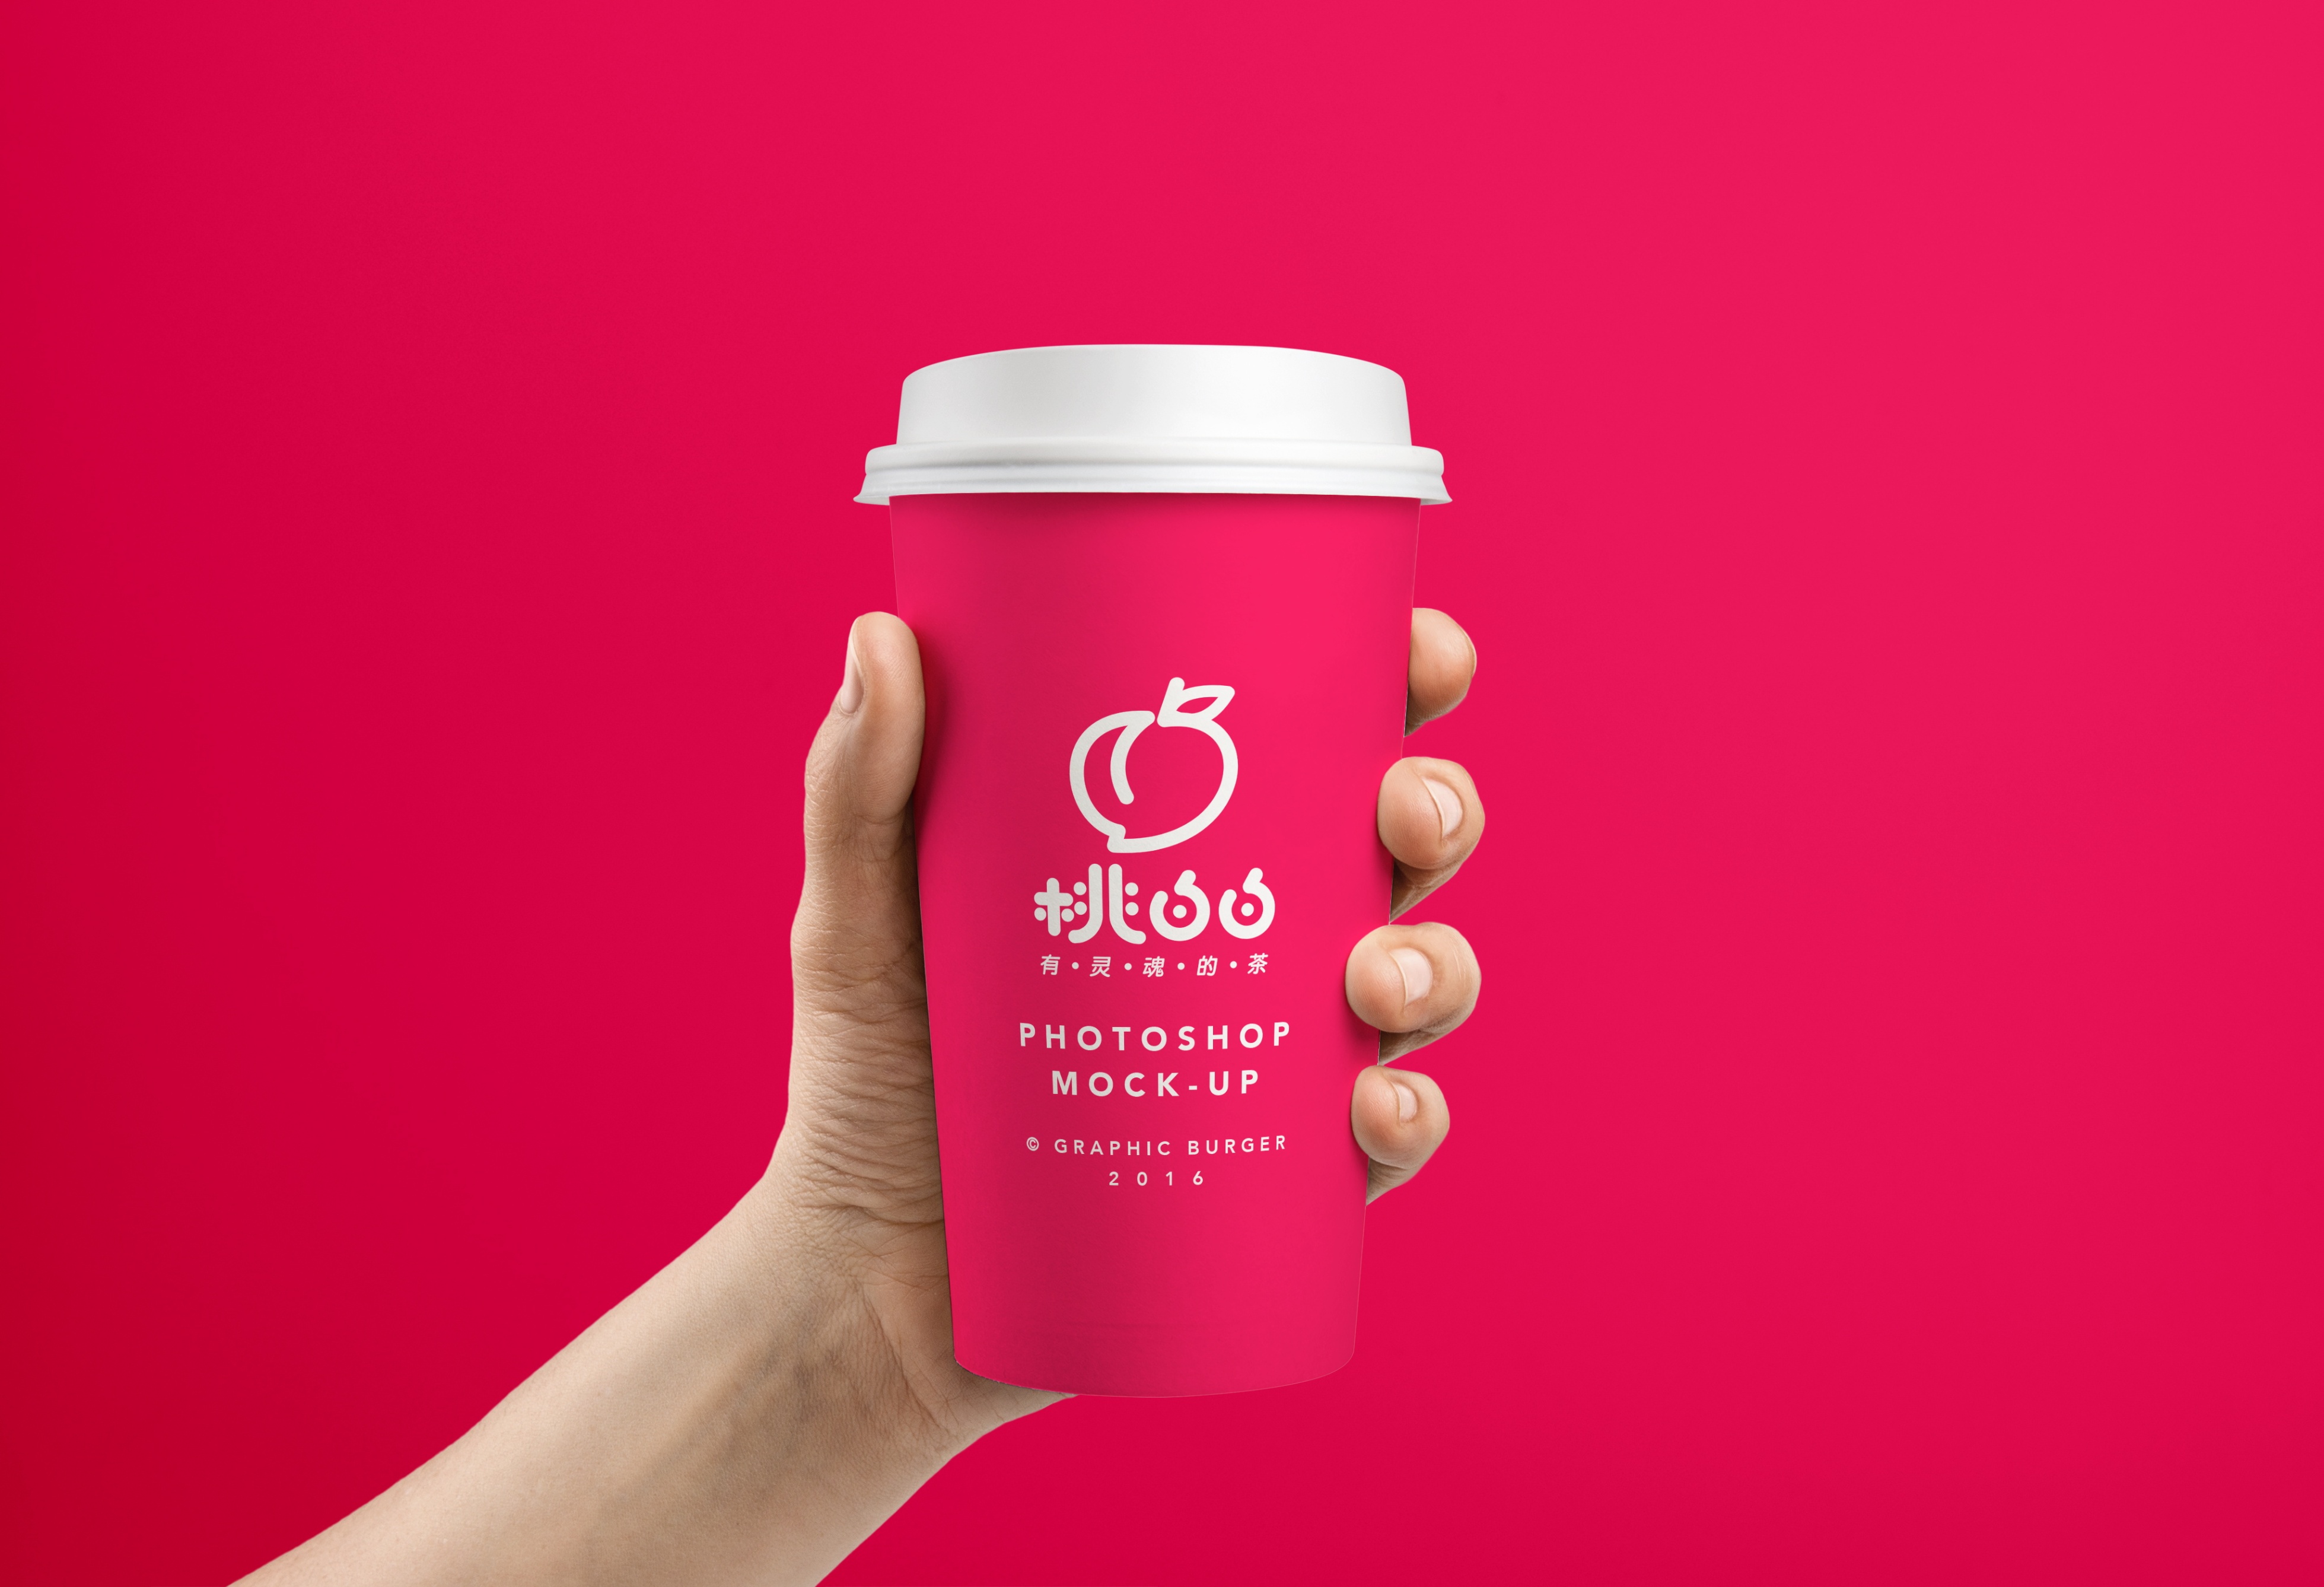 正本设计｜桃白白 网红茶饮品牌LOGO设计